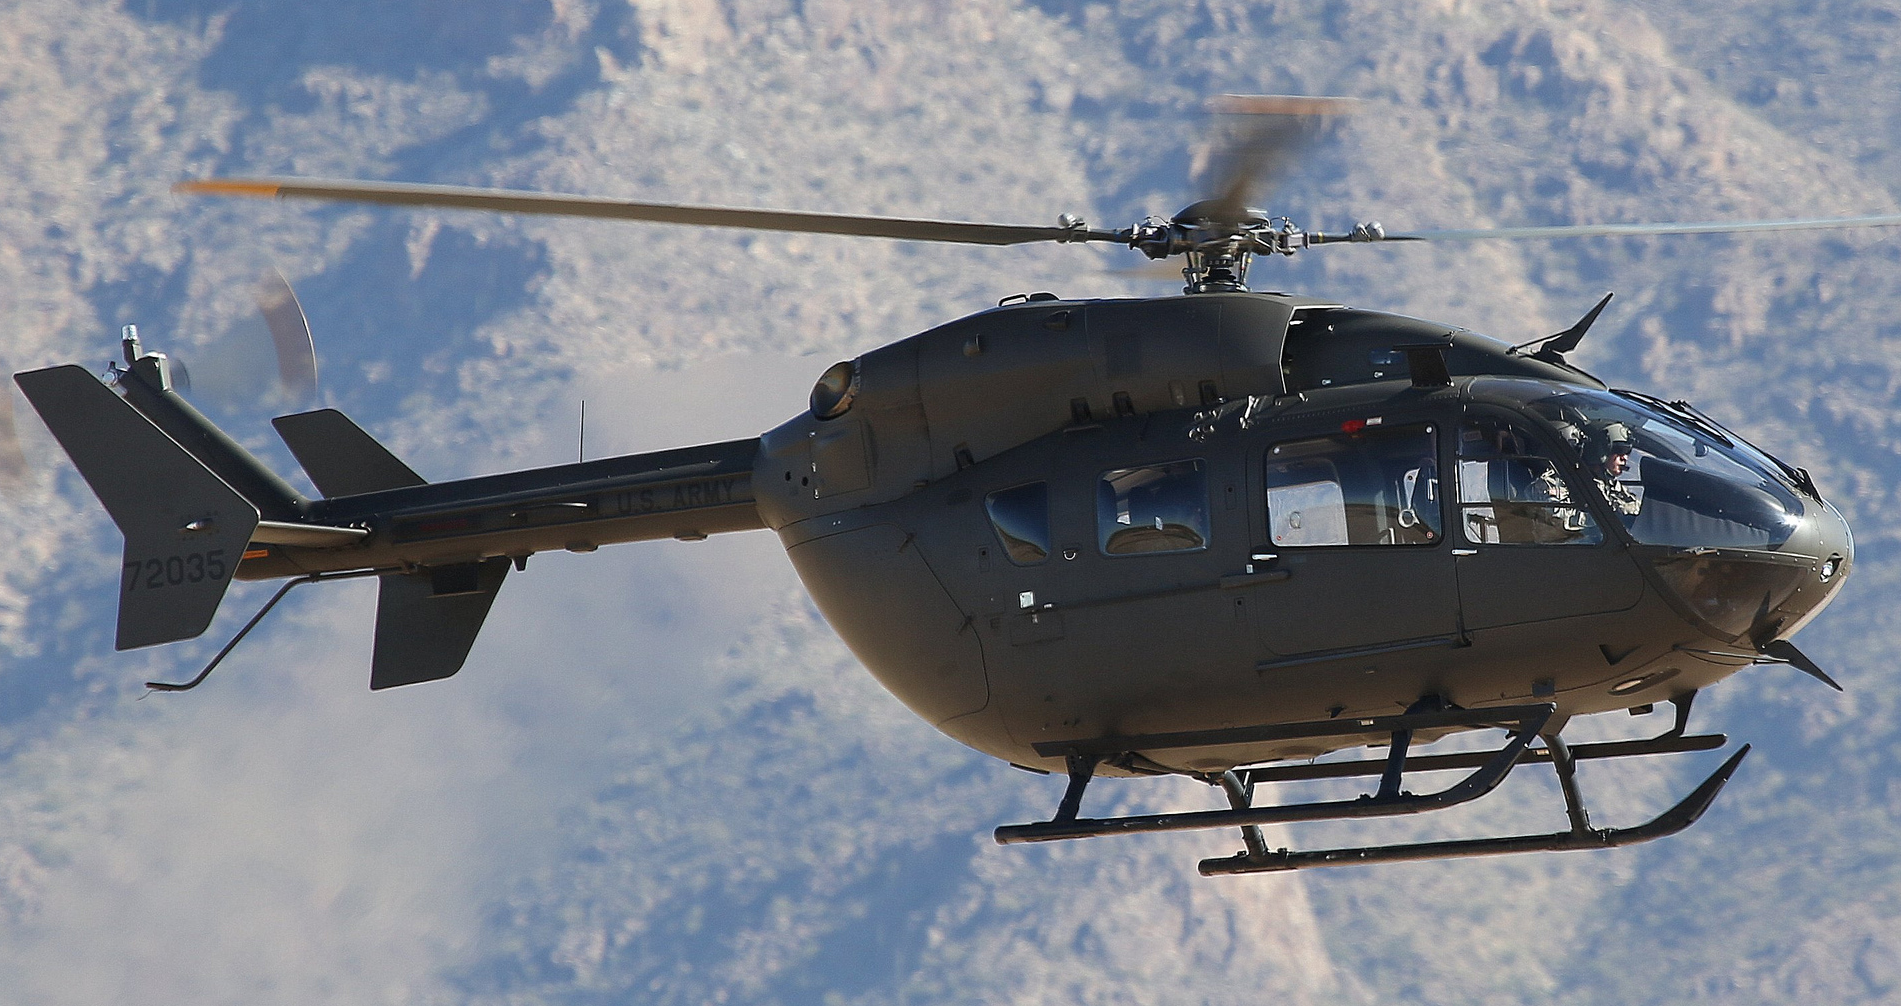 Еврокоптер uh-72 lakotaсодержание а также развитие [ править ]